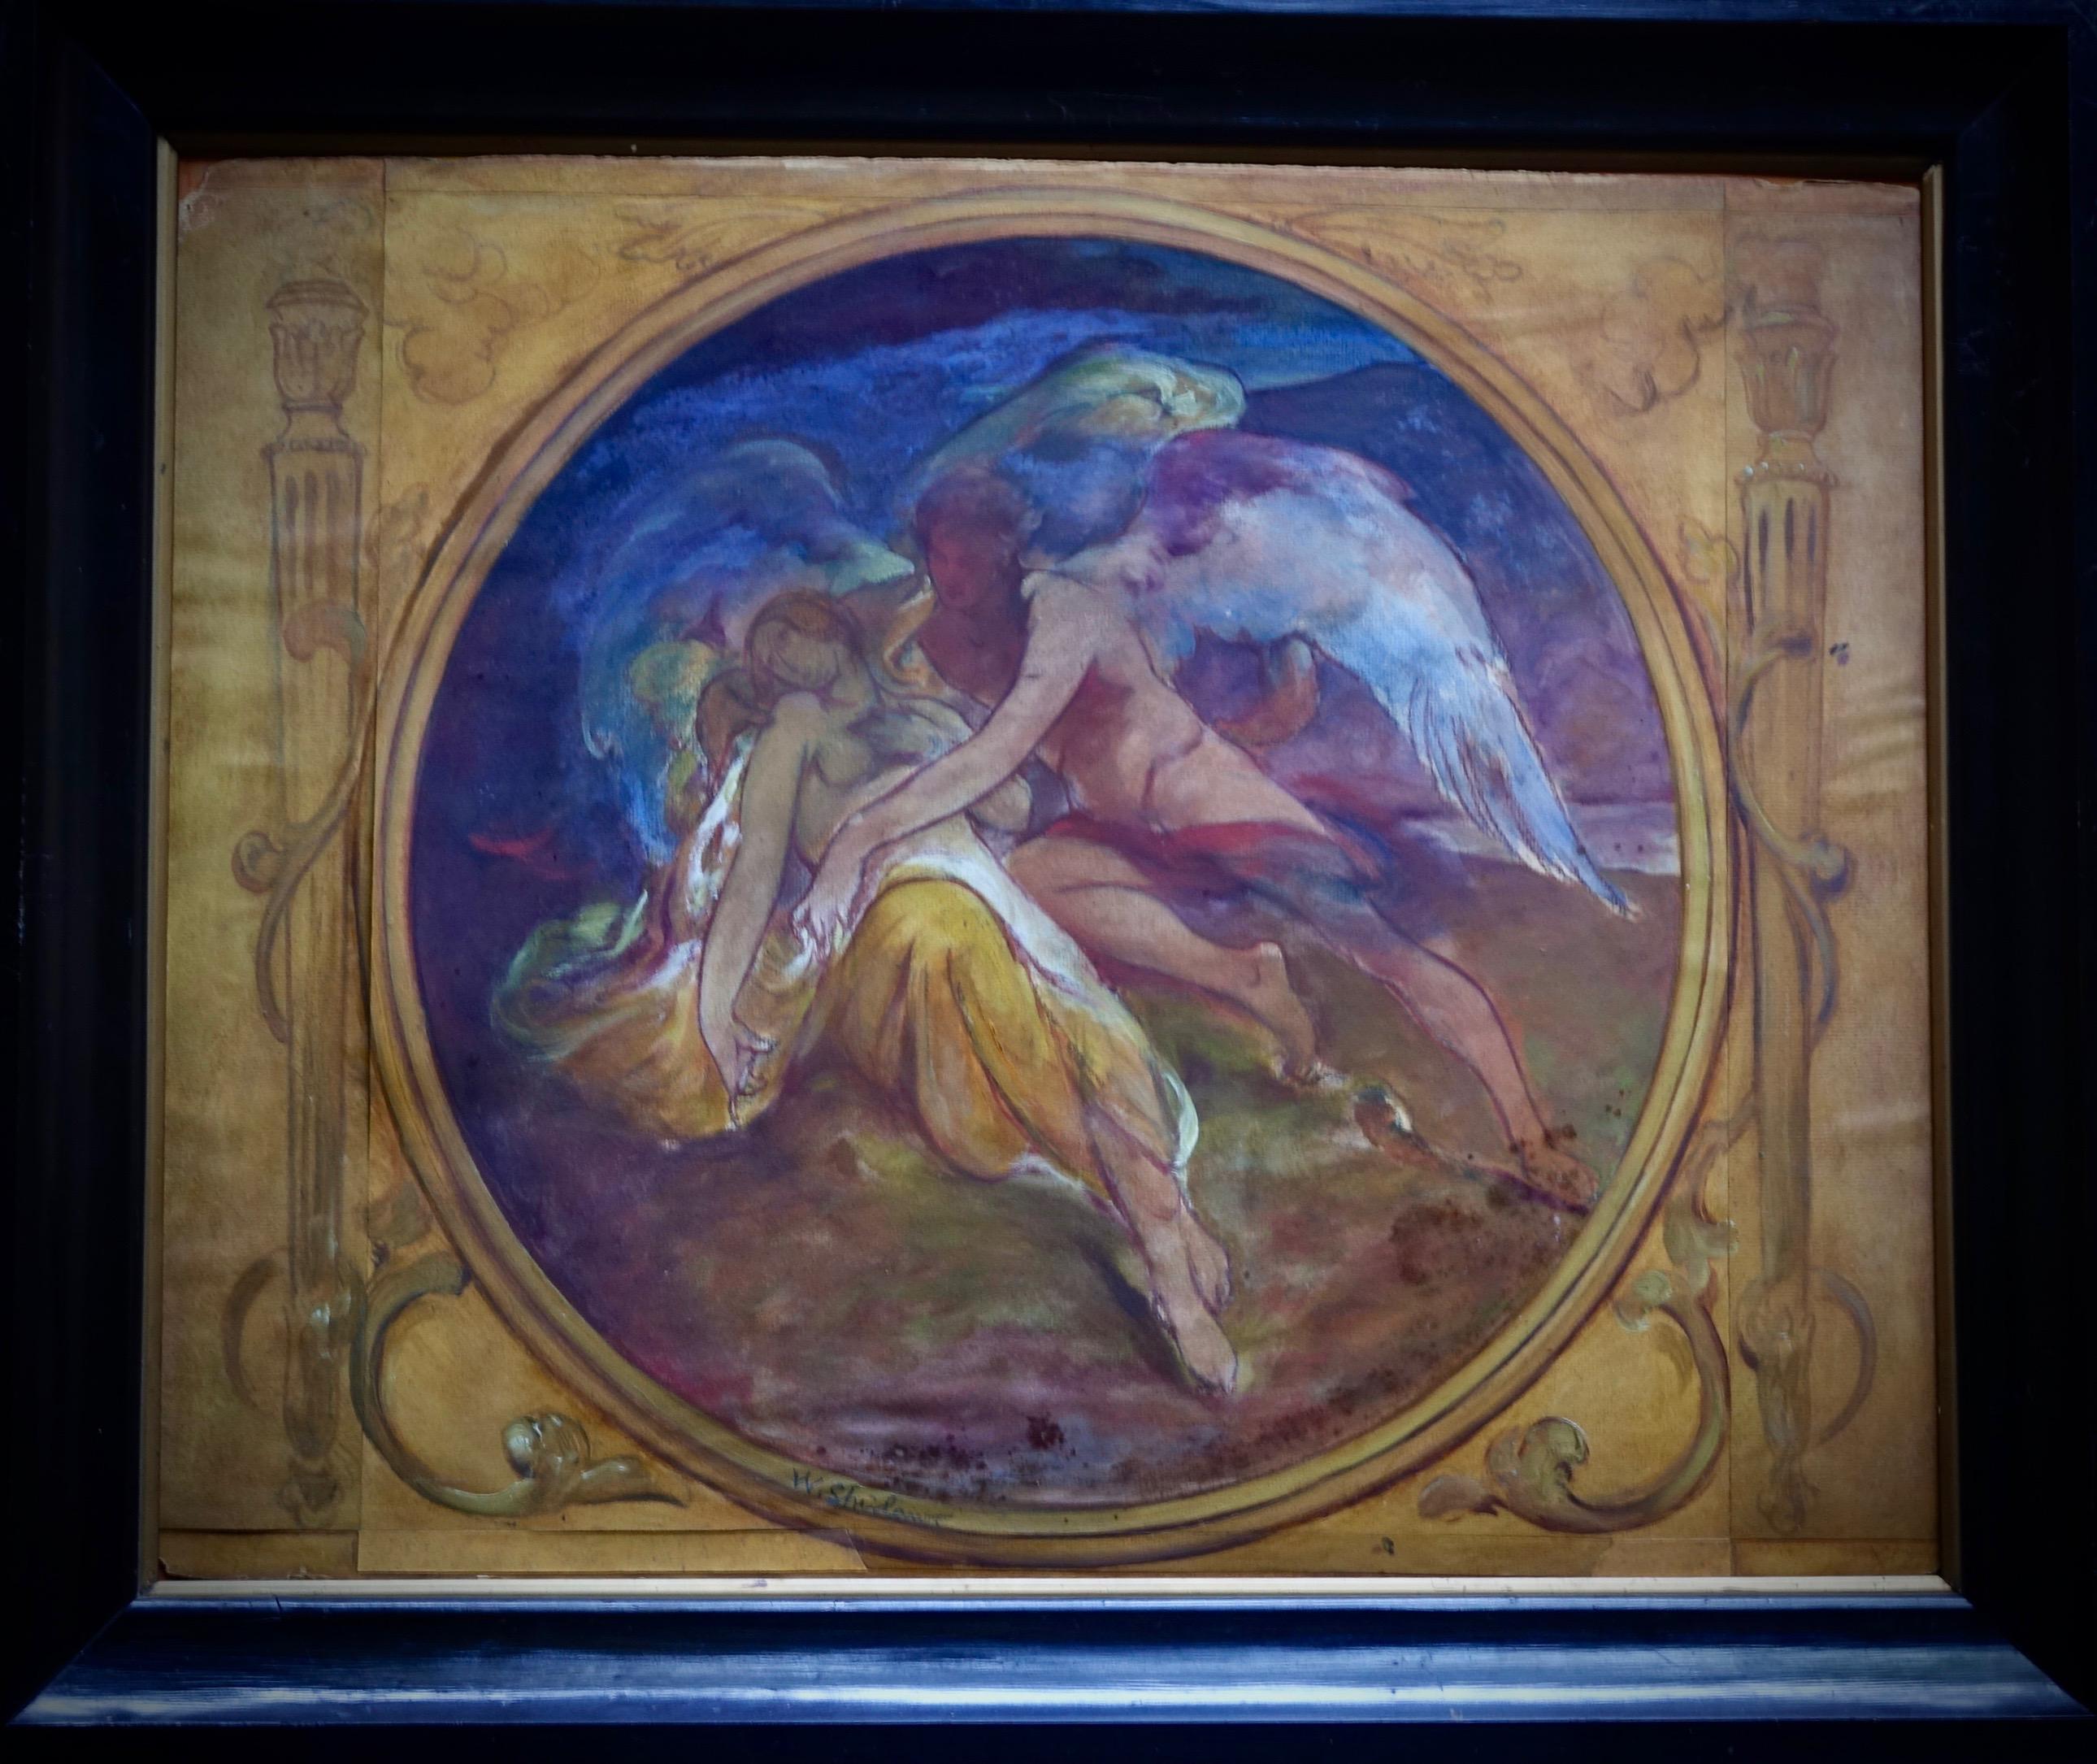 Walter Shirlaw (1838-1909)
Studie für eine dekorative Tafel
Bleistift und Aquarell auf Papier, aufgezogen auf Pappe
Maße: 62,5 x 74 x 5 cm (mit Rahmen)
50,5 x 62 (ohne Rahmen)
Signiert im Kreis unten rechts

Walter Shirlaw wurde in der Nähe